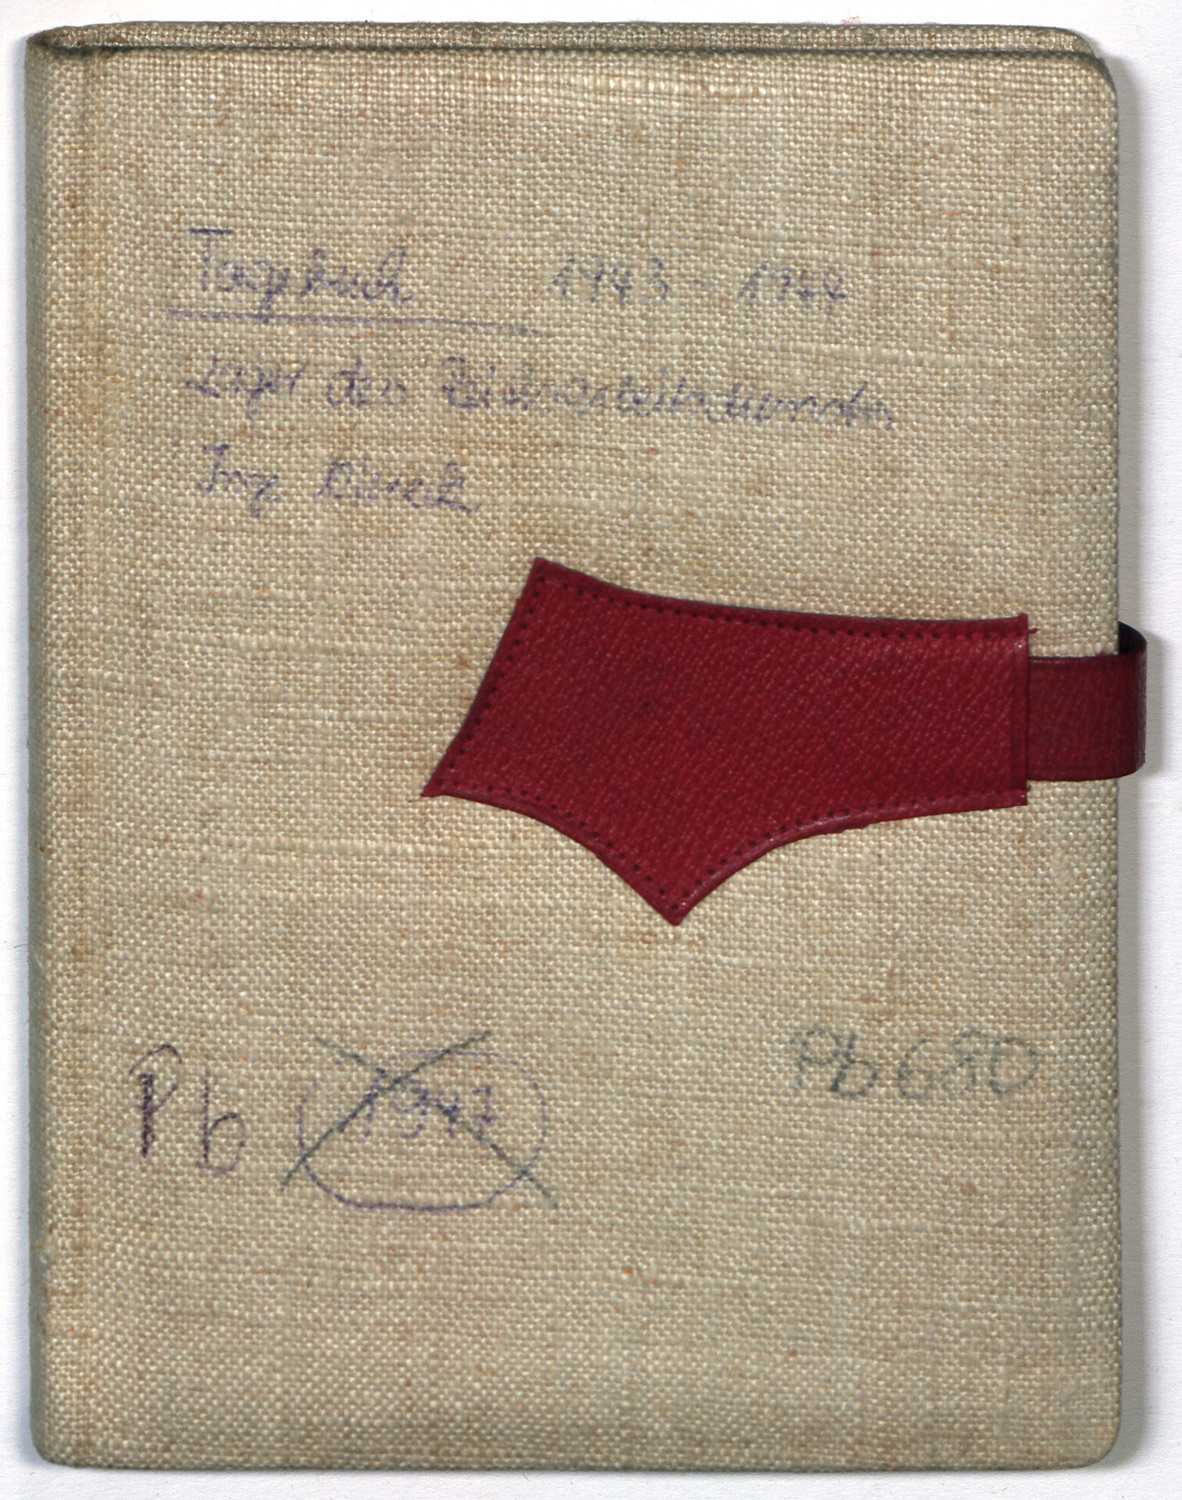 Tagebuch der Ingeborg Viereck, Abbildung 1 (Domstiftsarchiv Brandenburg/Havel CC BY-NC)